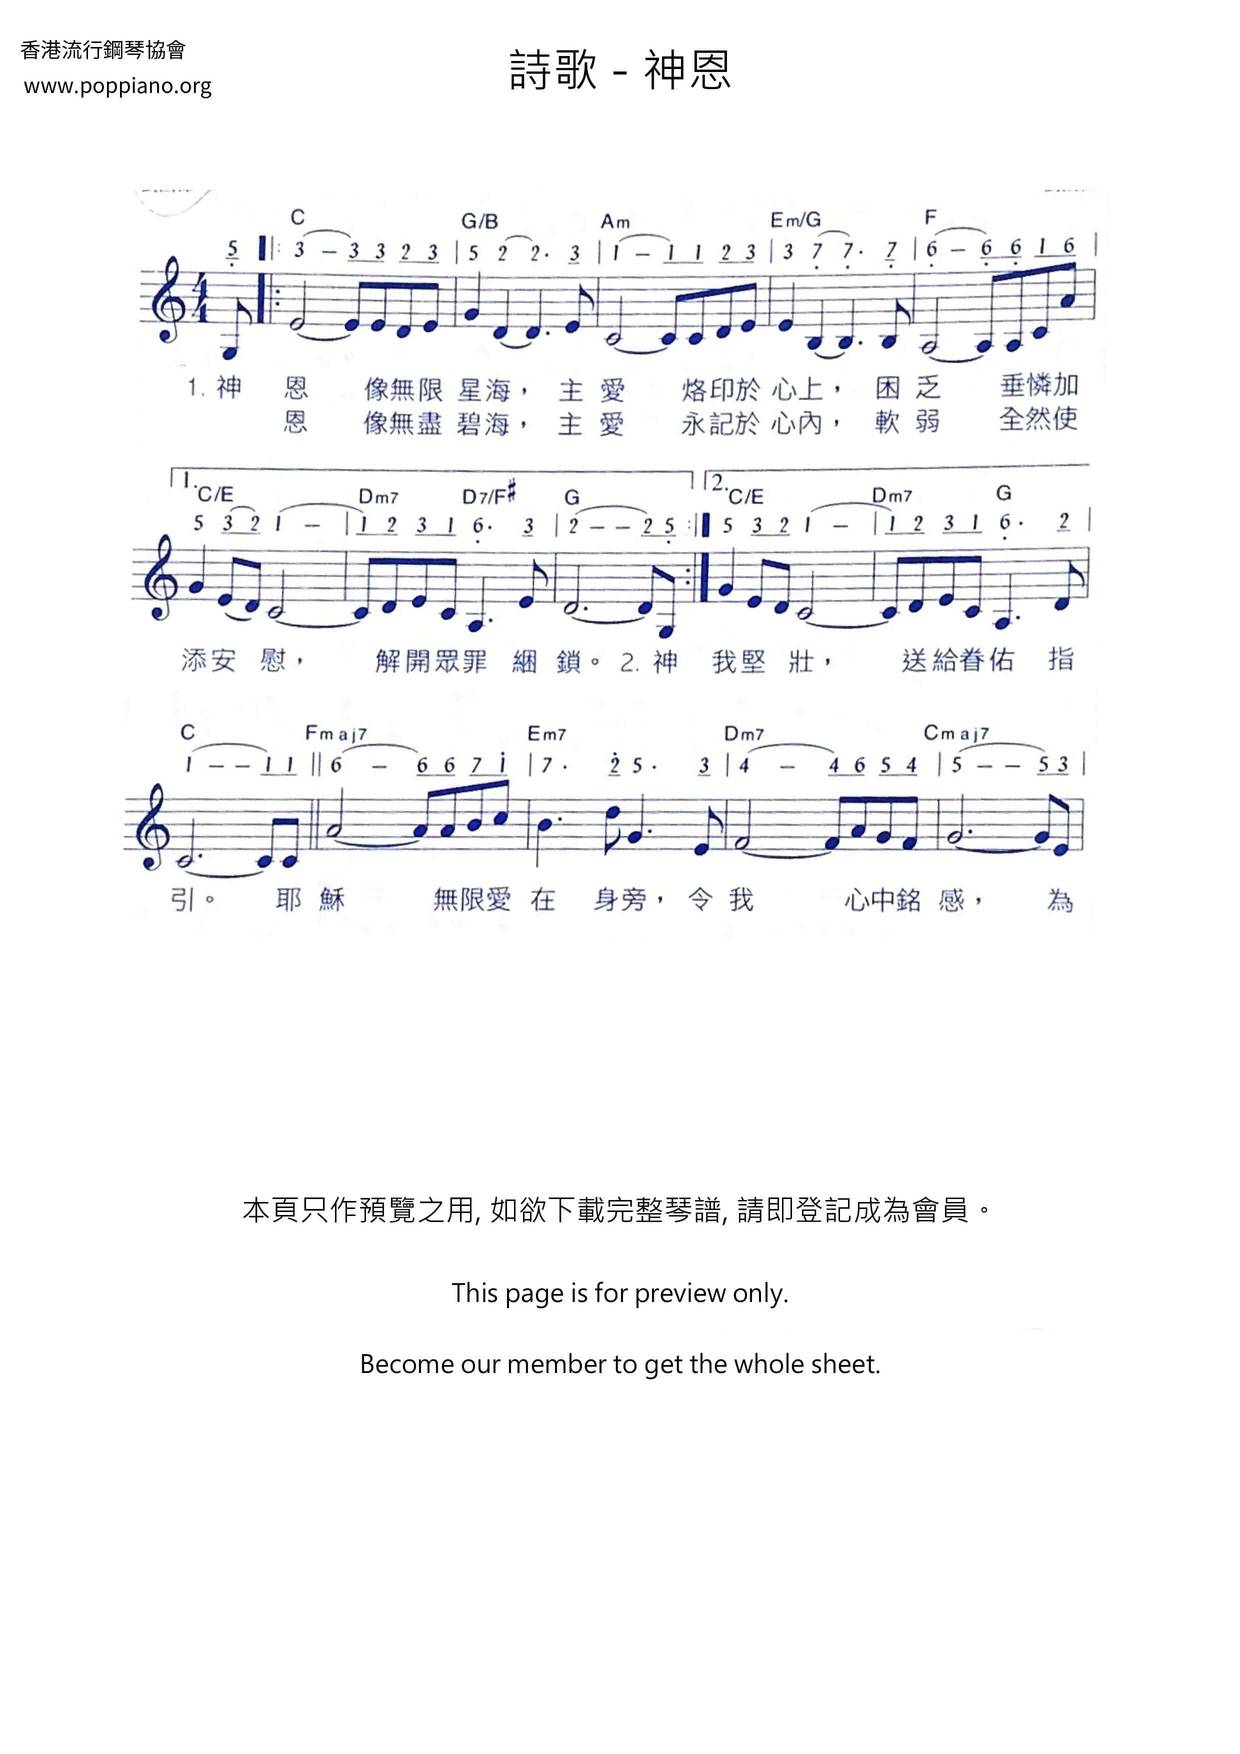 ★ 詩歌 神恩 琴譜pdf 香港流行鋼琴協會琴譜下載 ★